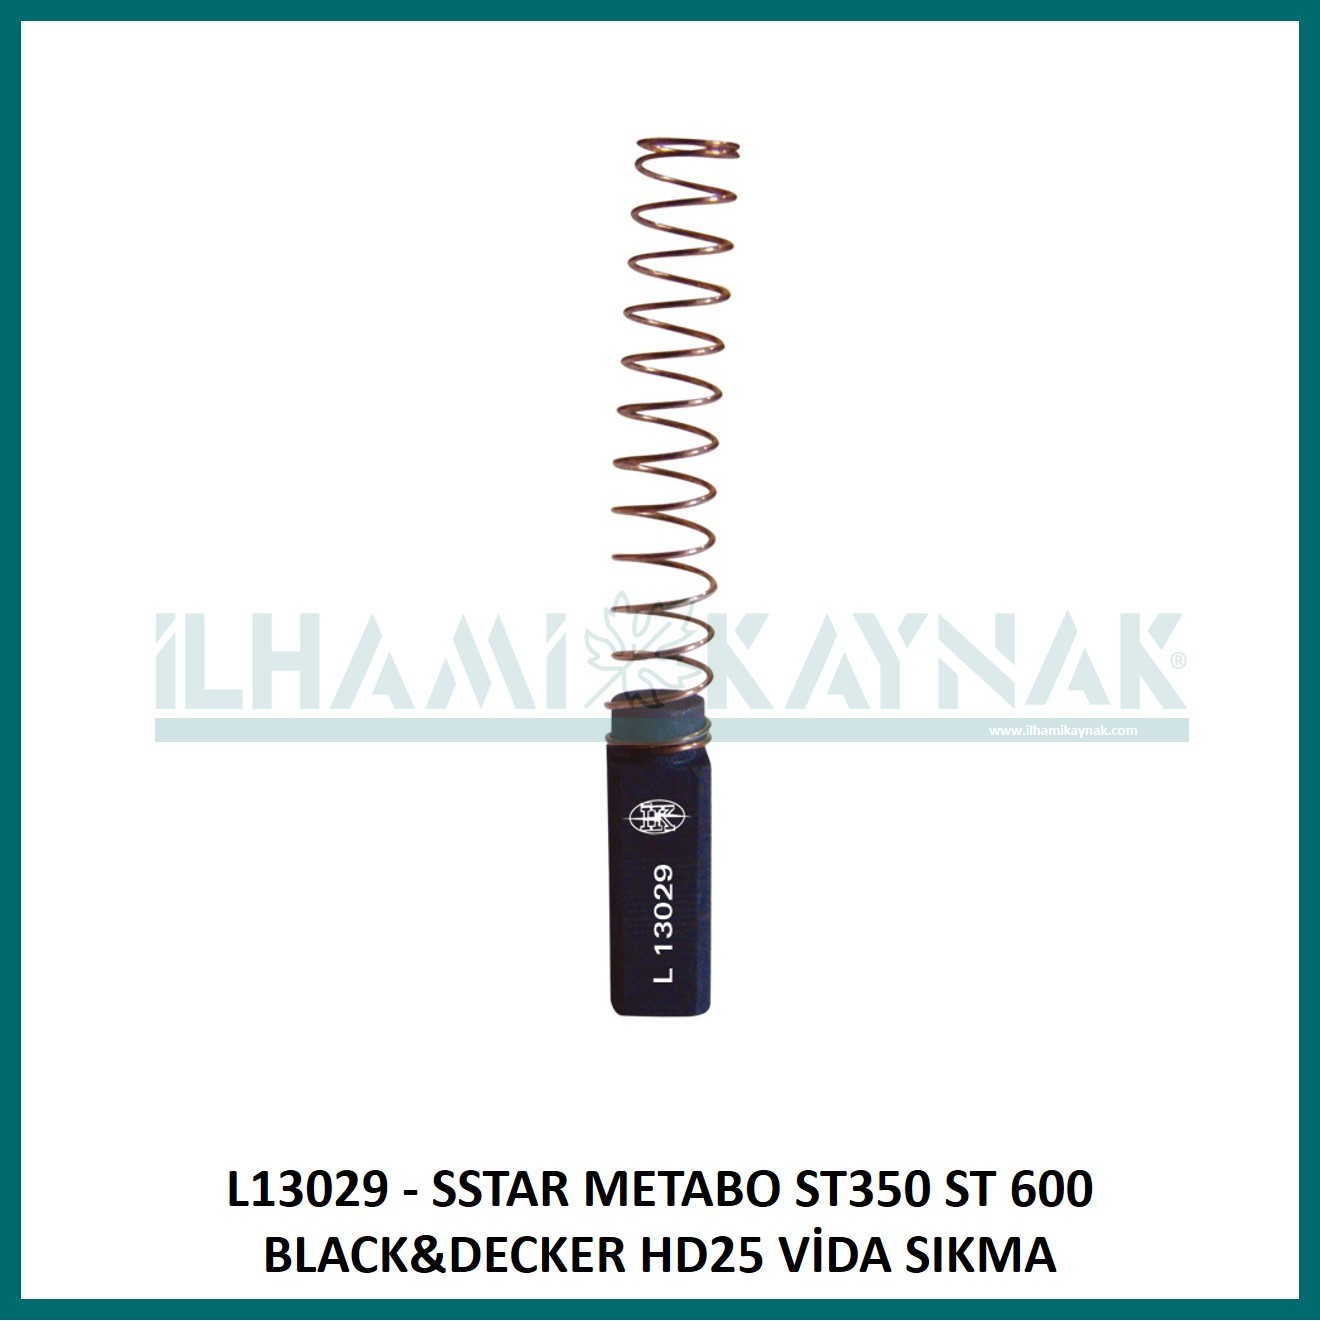 L13029 - SSTAR METABO ST350 ST 600 BLACK&DECKER HD25 VİDA SIKMA -6*6*18 mm - 100 Adet